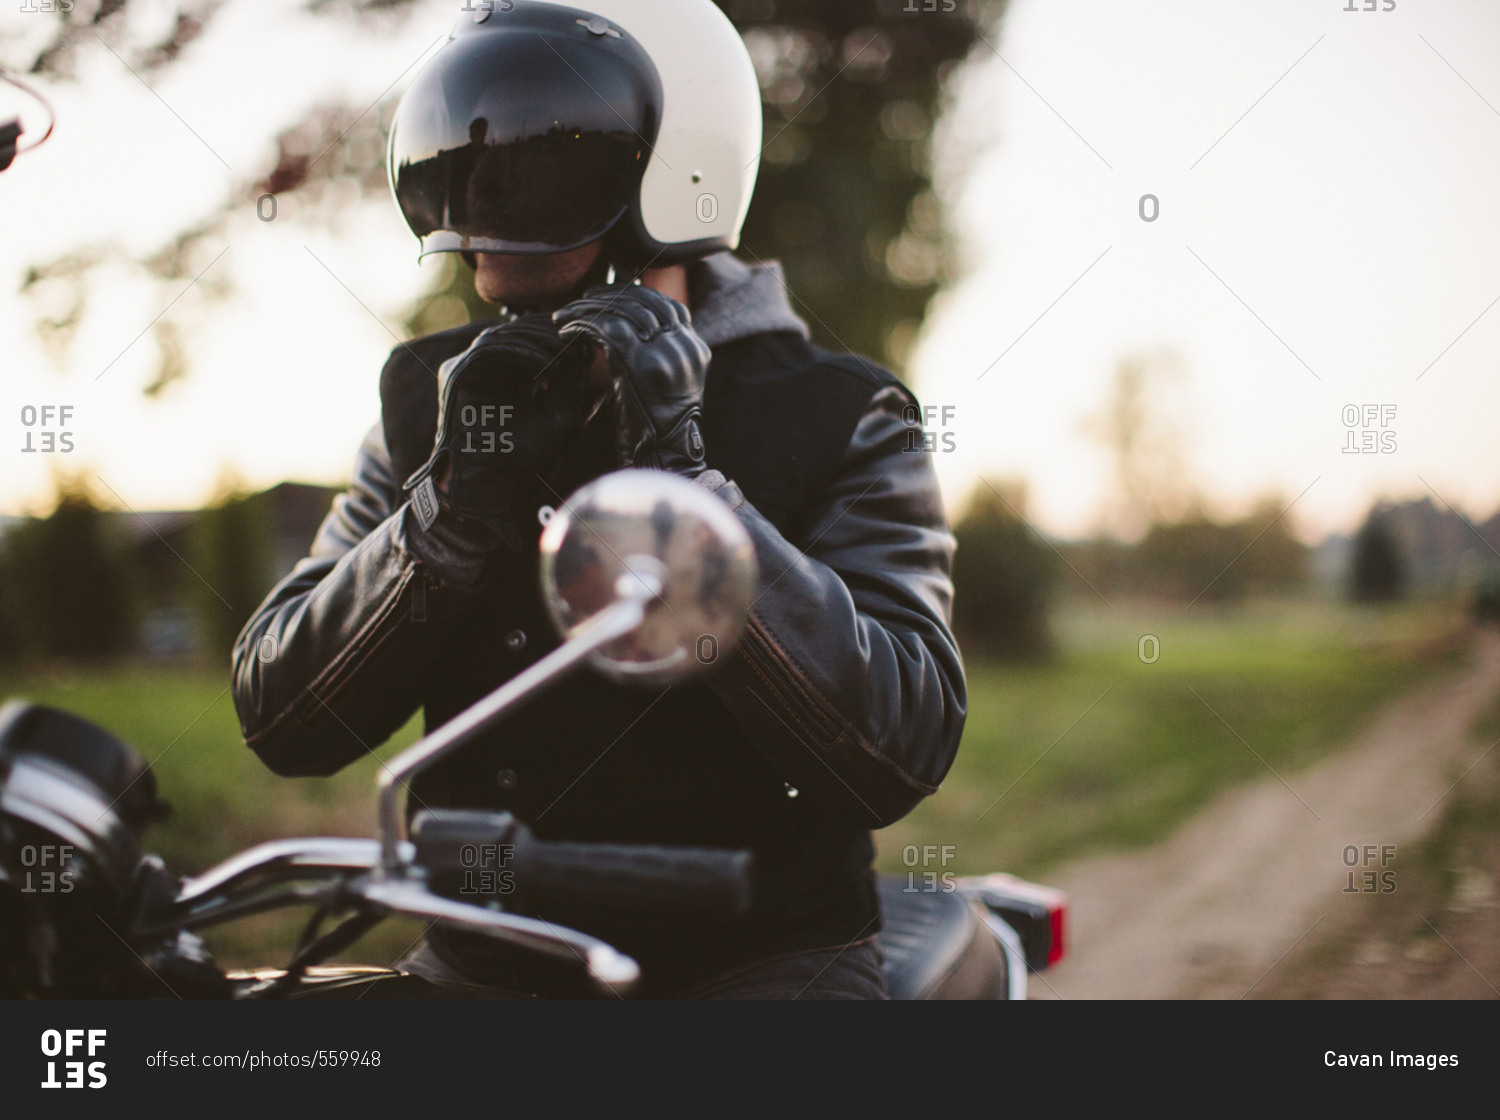 Male biker adjusting helmet while sitting on motorcycle